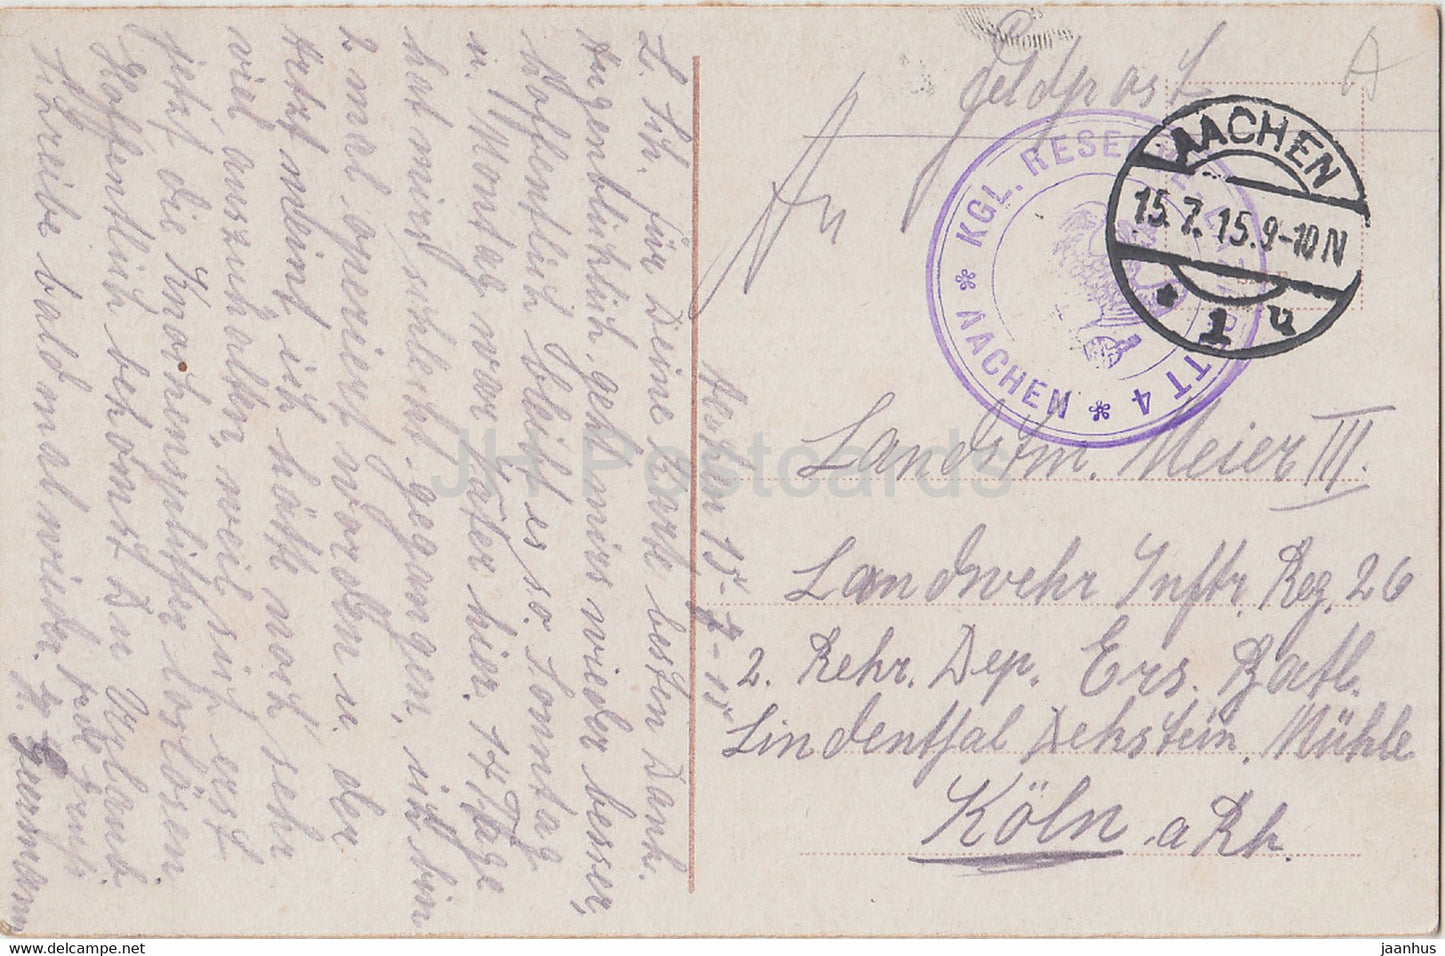 Aachen - Feldpost - alte Postkarte - 1915 - Deutschland - gebraucht